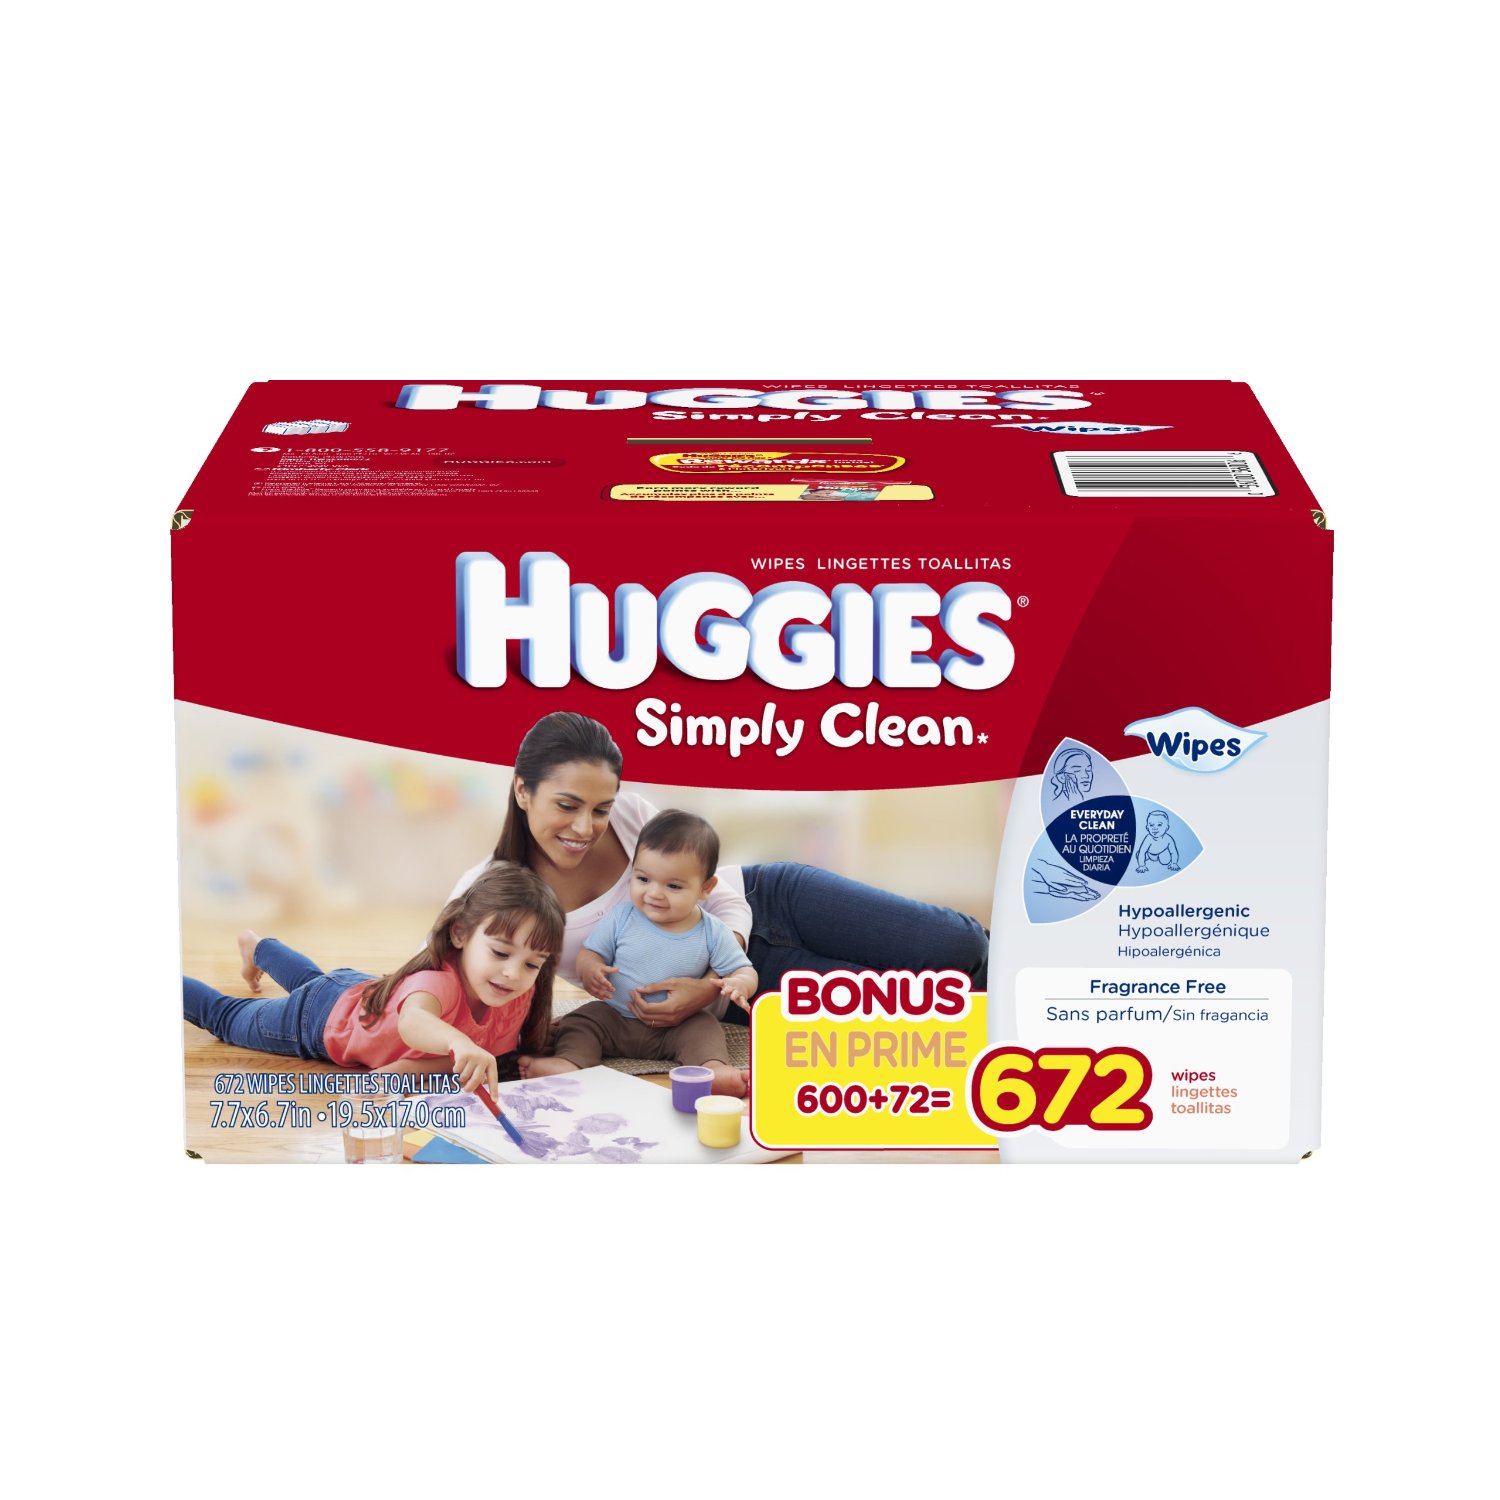 Huggies好奇 Simply Clean无香型婴儿湿纸巾 (672张) $12.97